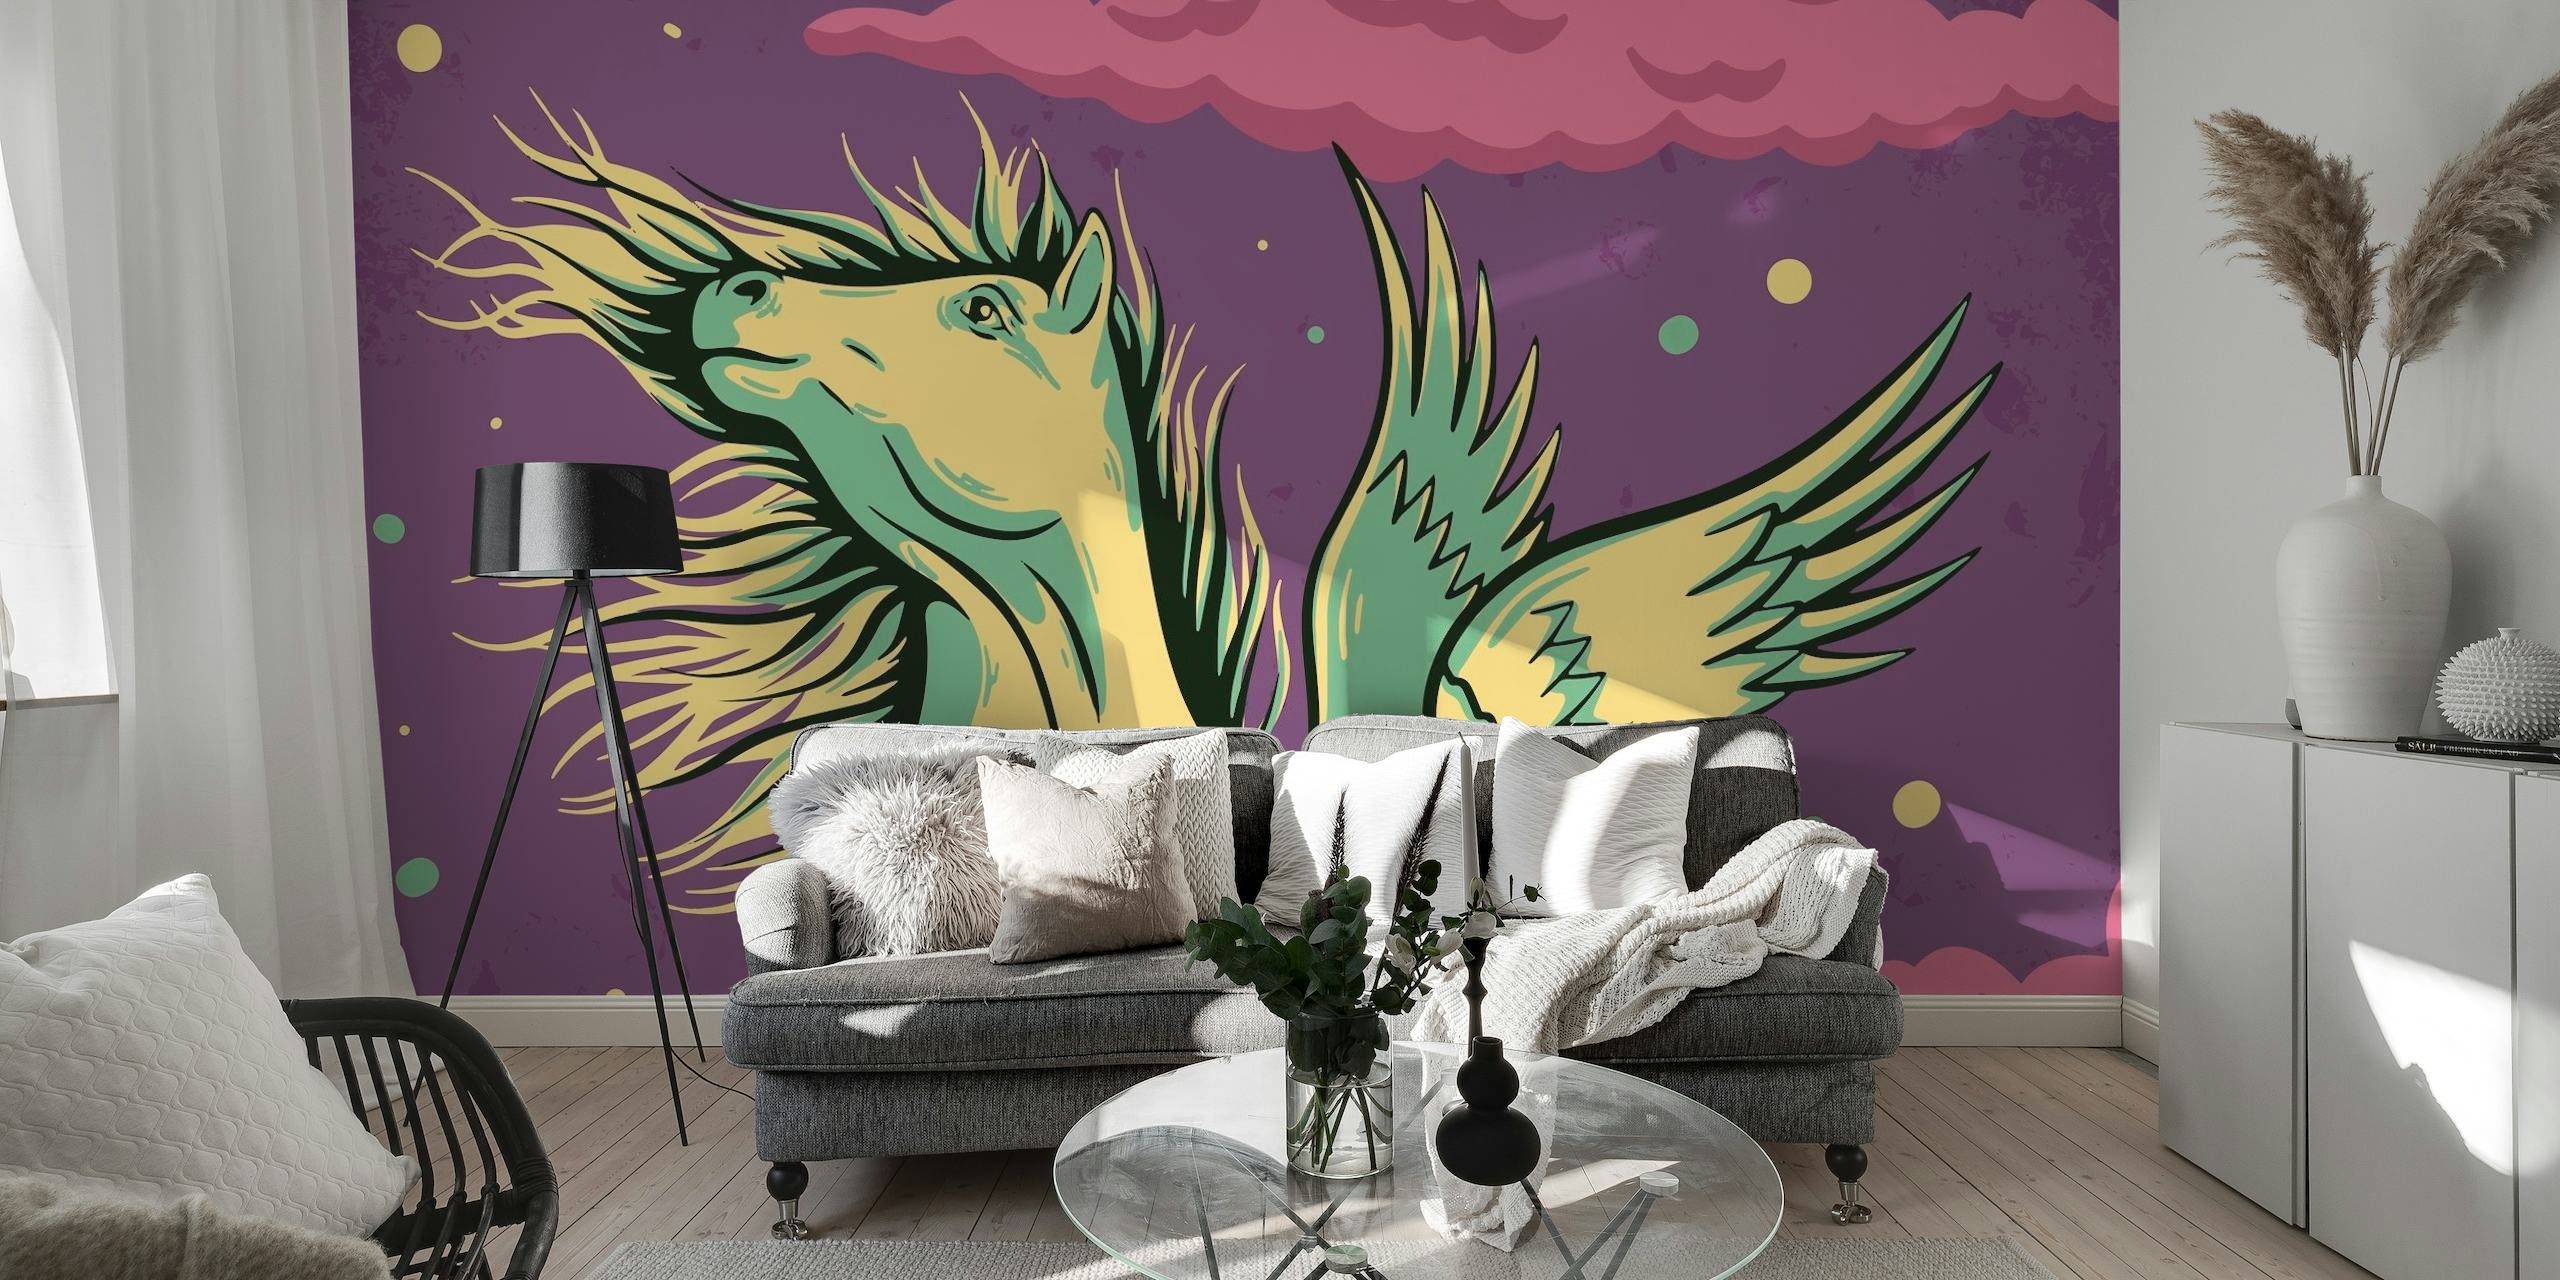 Pegasus-Wandbild mit mythischem Pferd in einem violetten Sternenhimmel